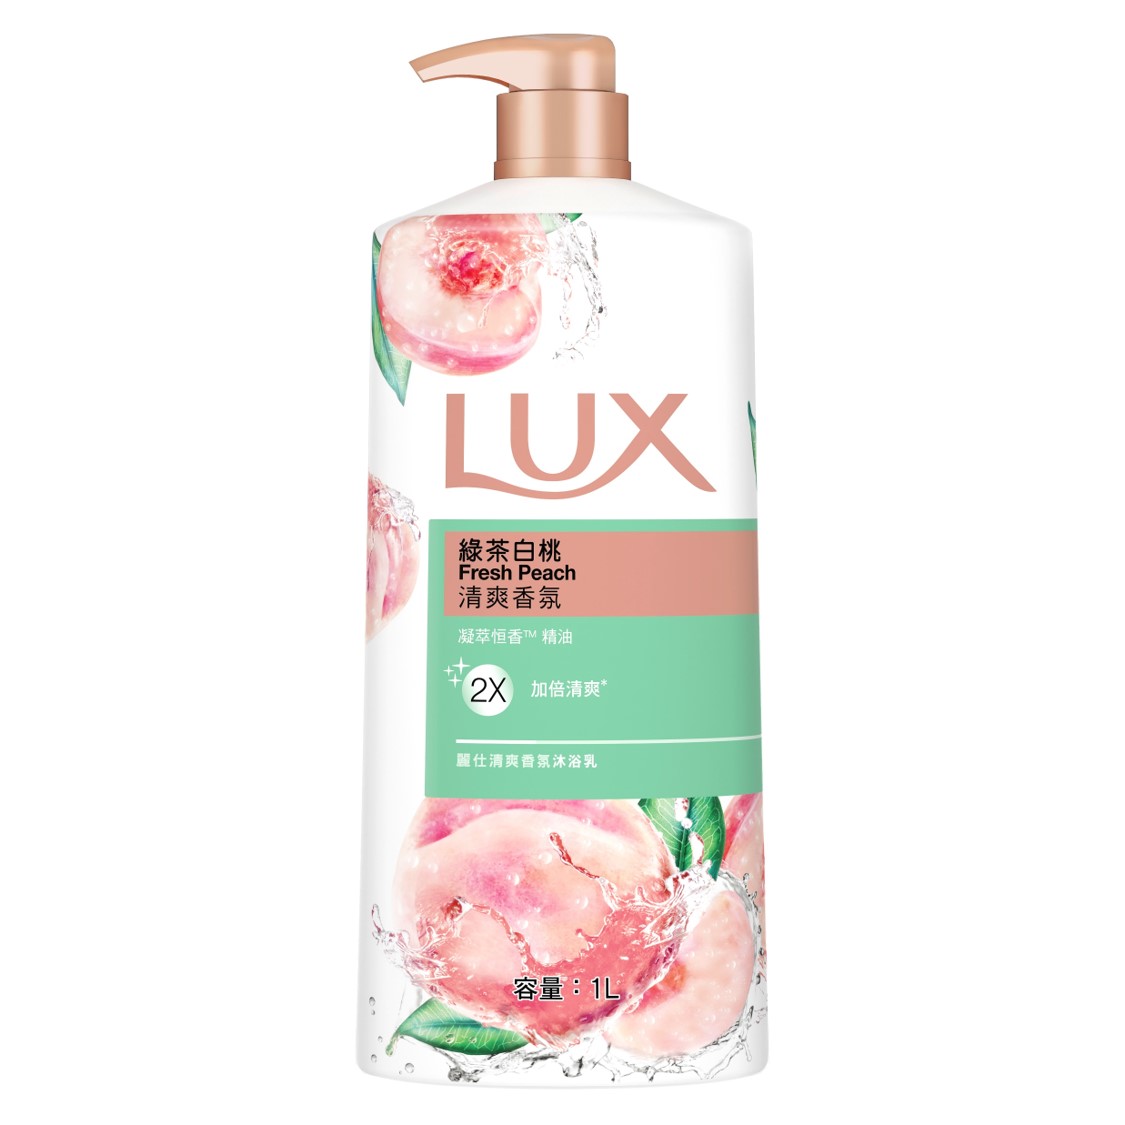 LUX沐浴乳1L-綠茶白桃 【康鄰超市】